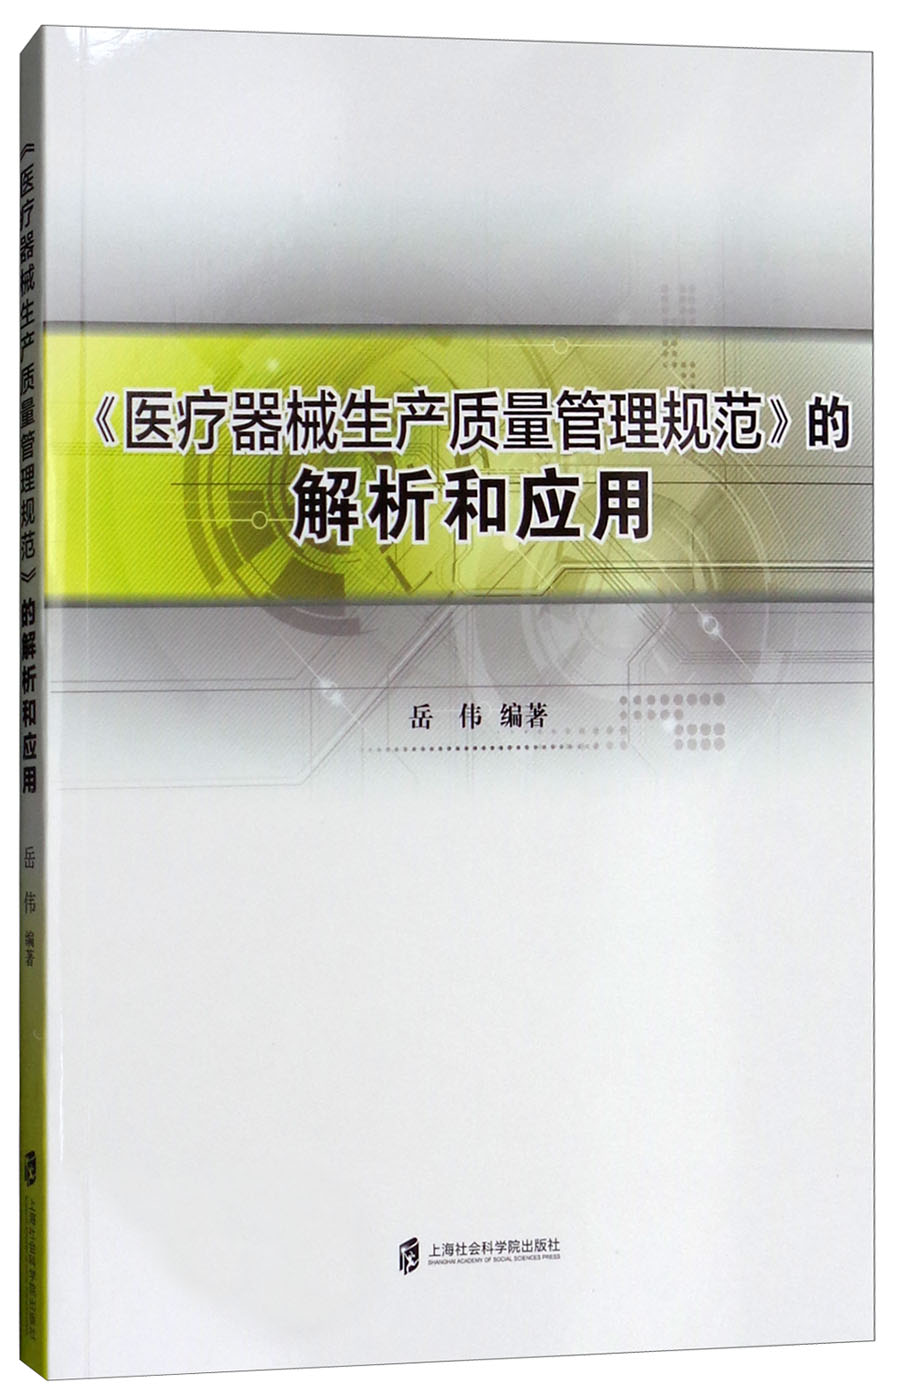 《医疗器械生产质量管理规范》的解析和应用岳伟9787552009309 kindle格式下载